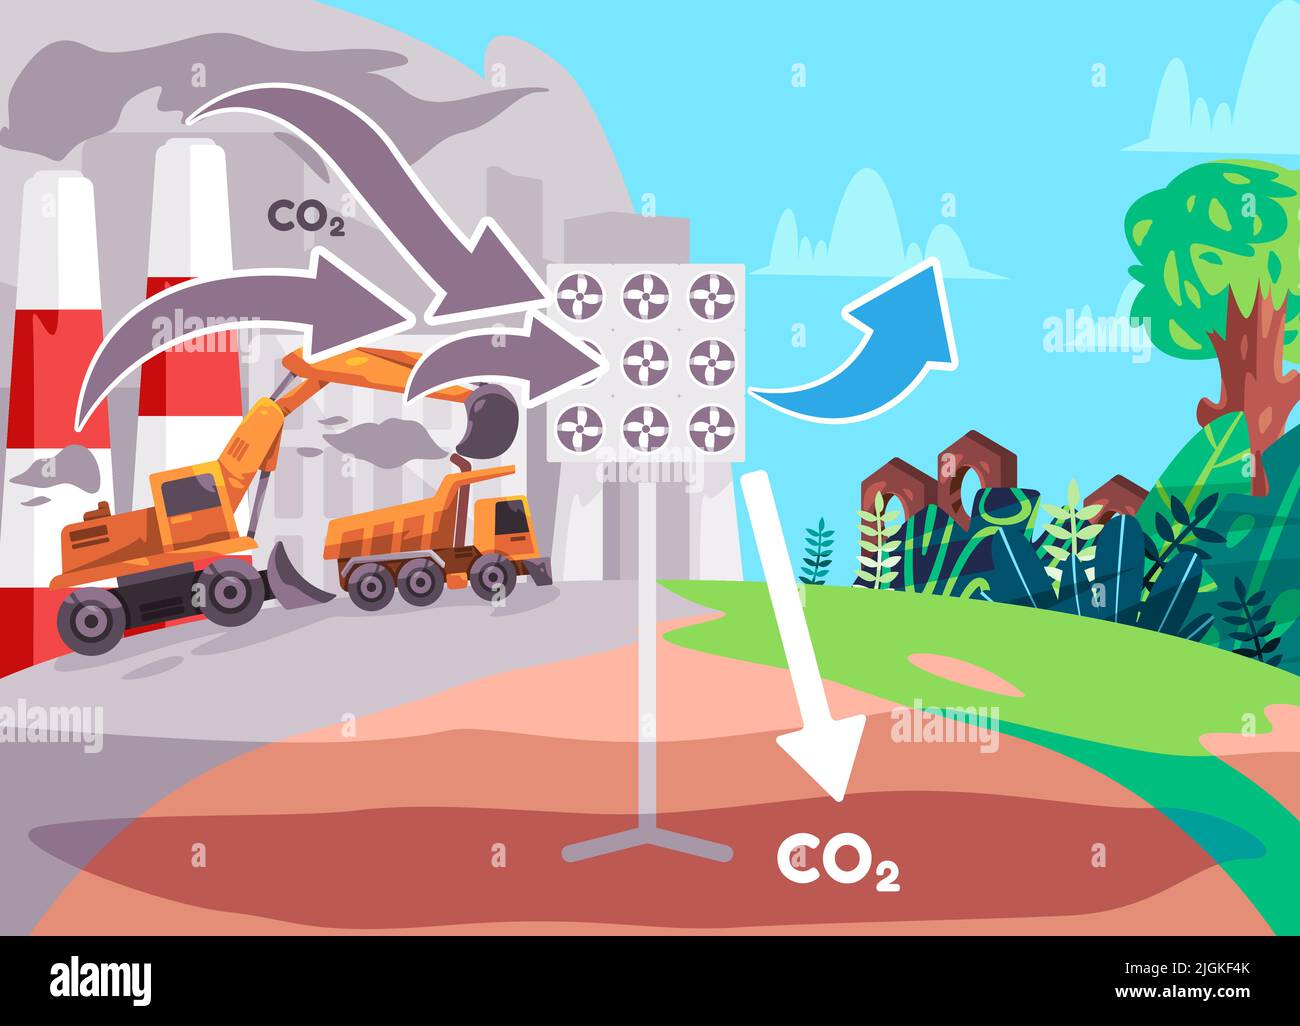 La technologie de capture du carbone absorbe le dioxyde de carbone CO2 à stocker sur l'illustration de couleur plate de dessin animé de la conception de sol Illustration de Vecteur